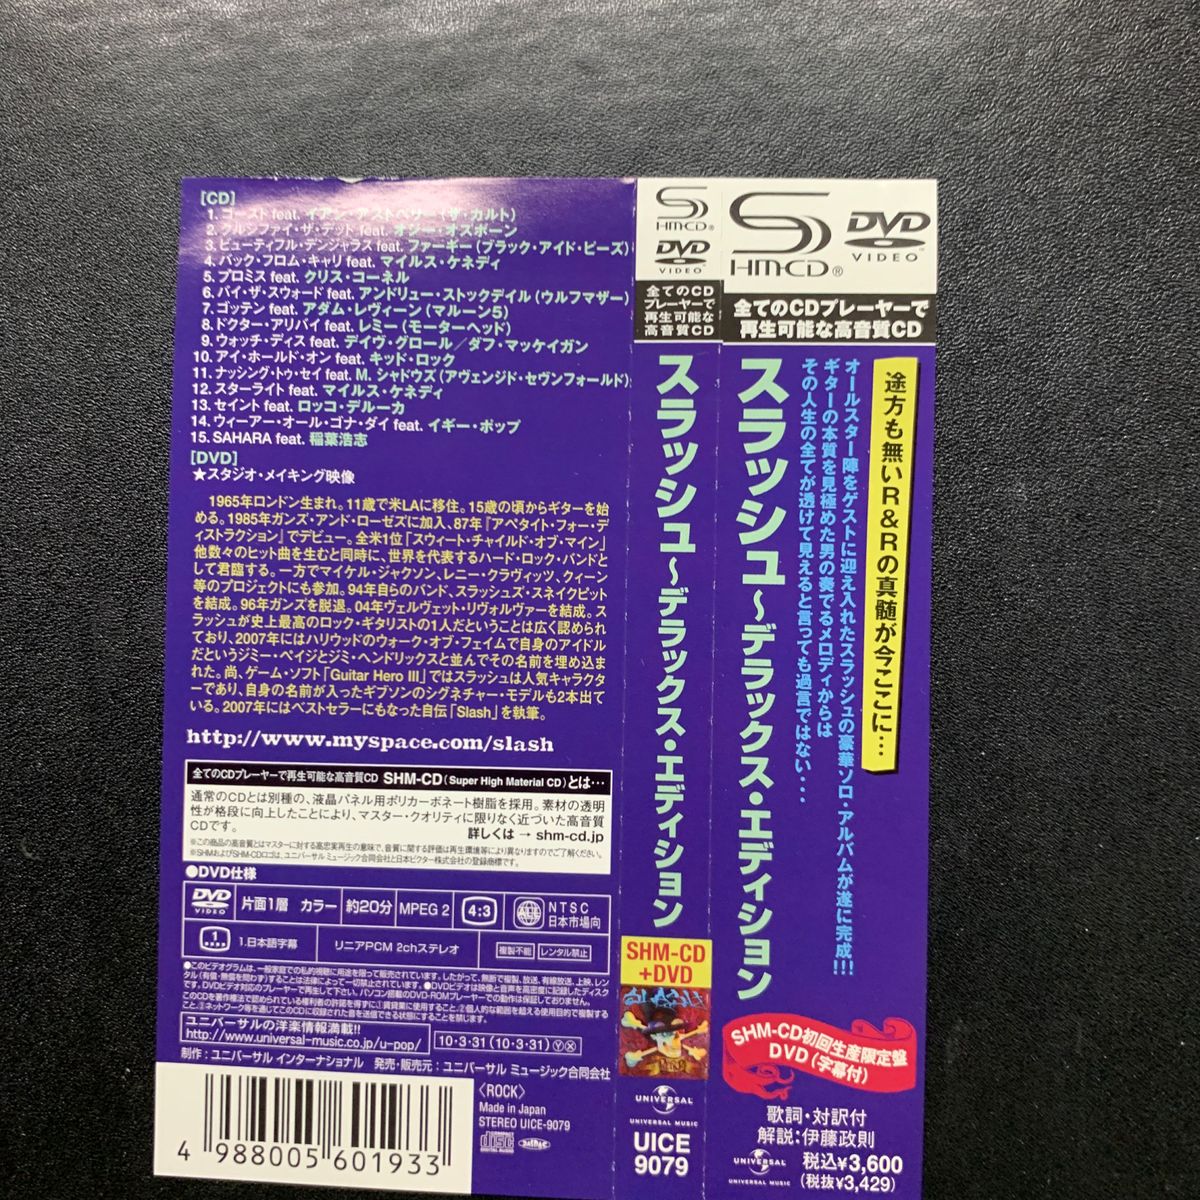 スラッシュ~デラックスエディション (初回生産限定盤) (DVD付)